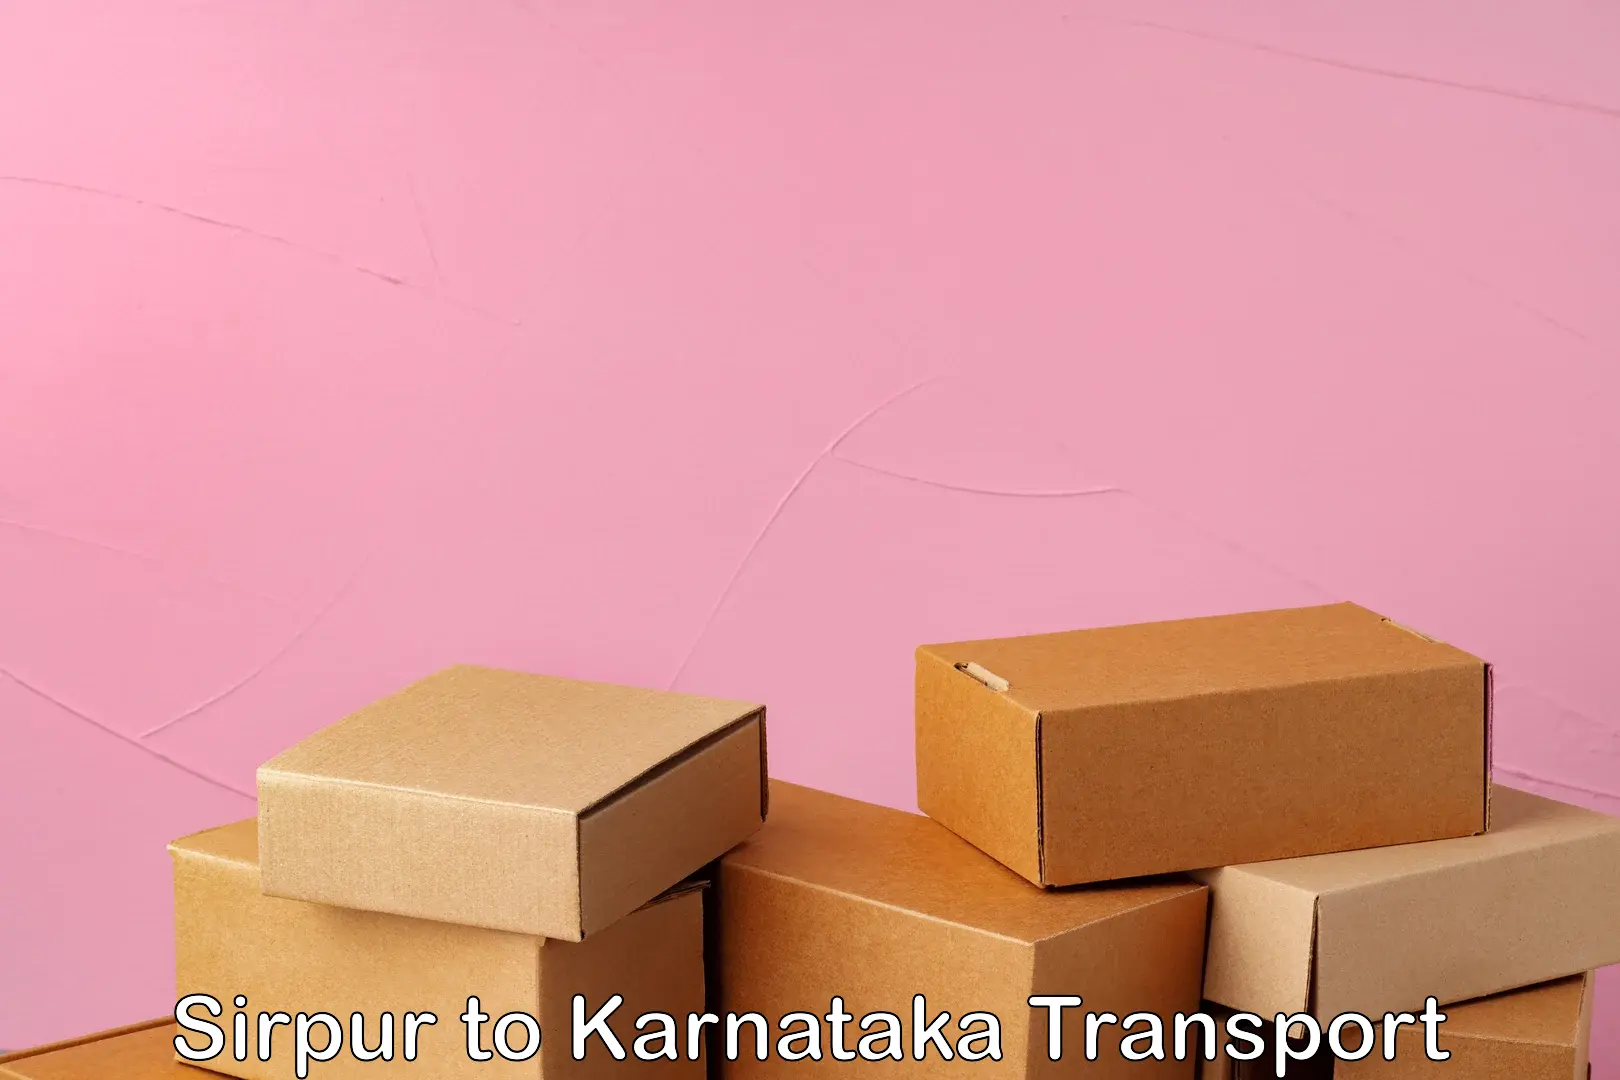 Furniture transport service Sirpur to Kanjarakatte